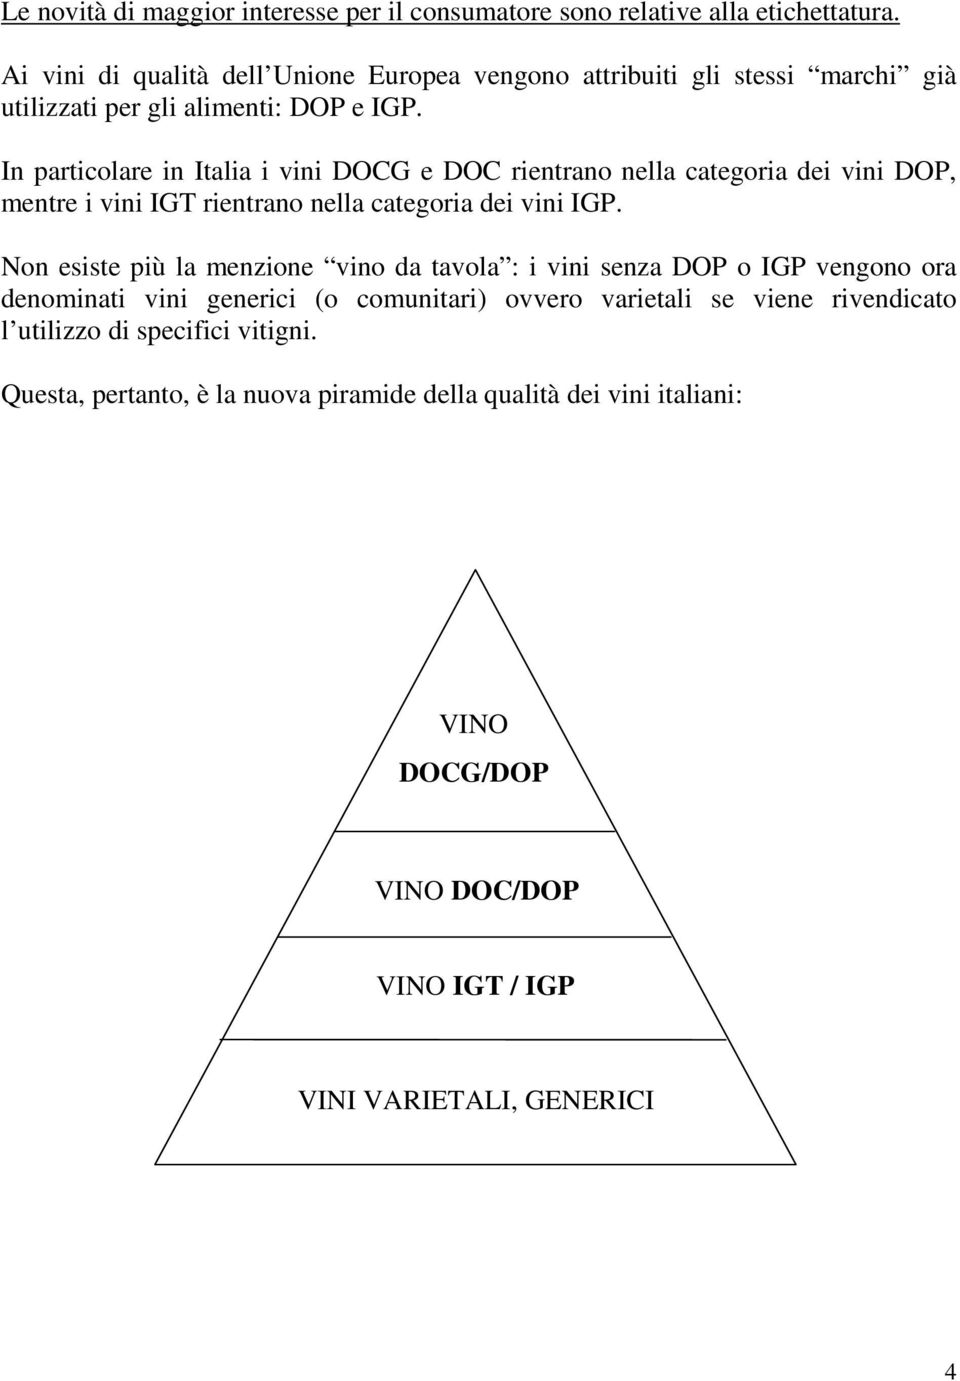 In particolare in Italia i vini DOCG e DOC rientrano nella categoria dei vini DOP, mentre i vini IGT rientrano nella categoria dei vini IGP.